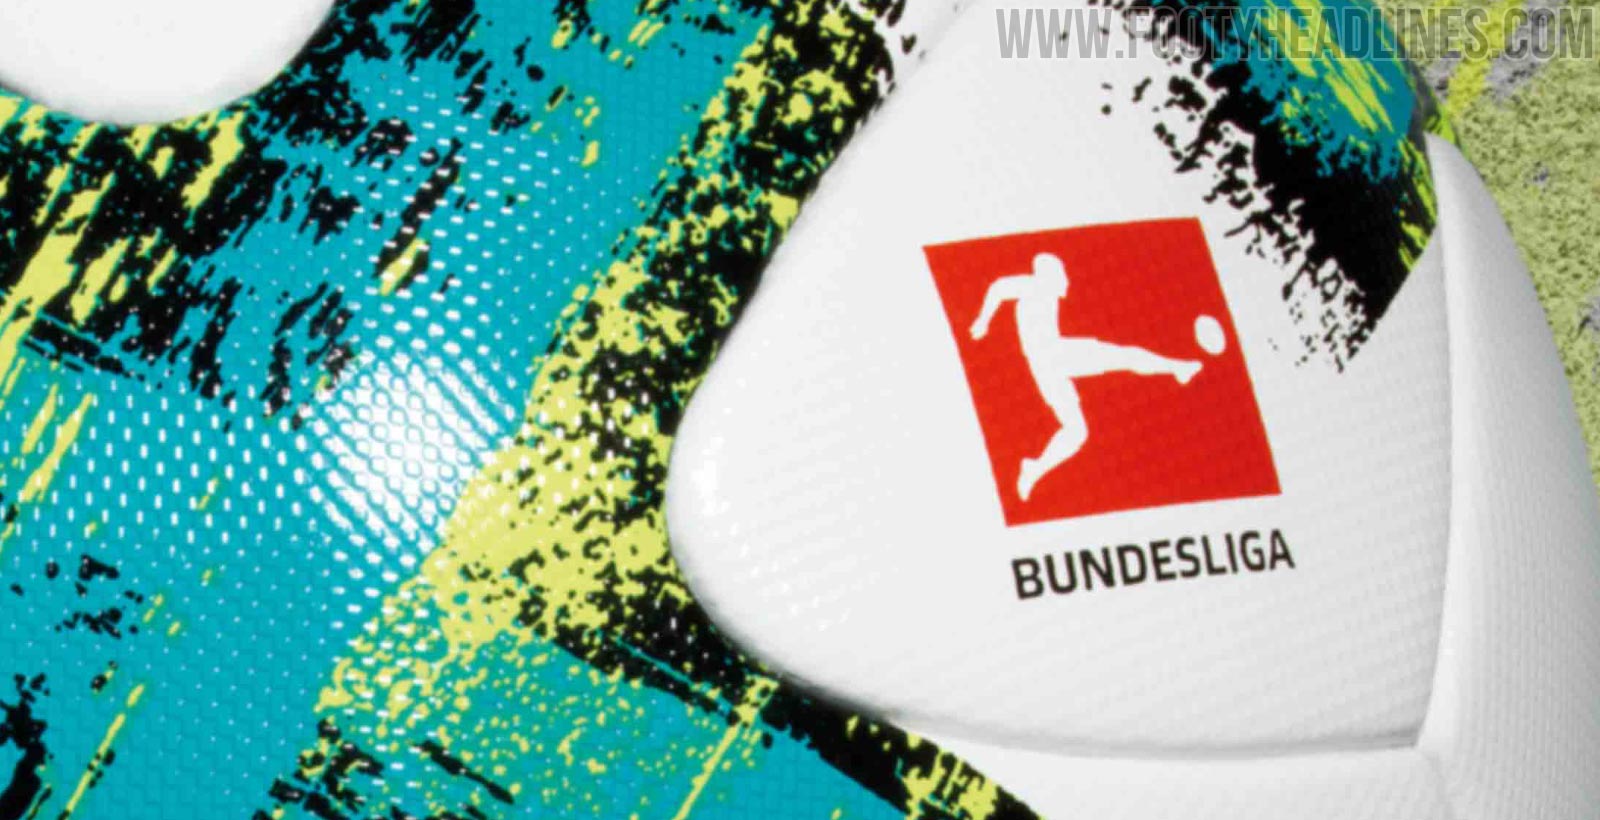 Last Made Adidas - Adidas Bundesliga Ball Released - Footy Headlines